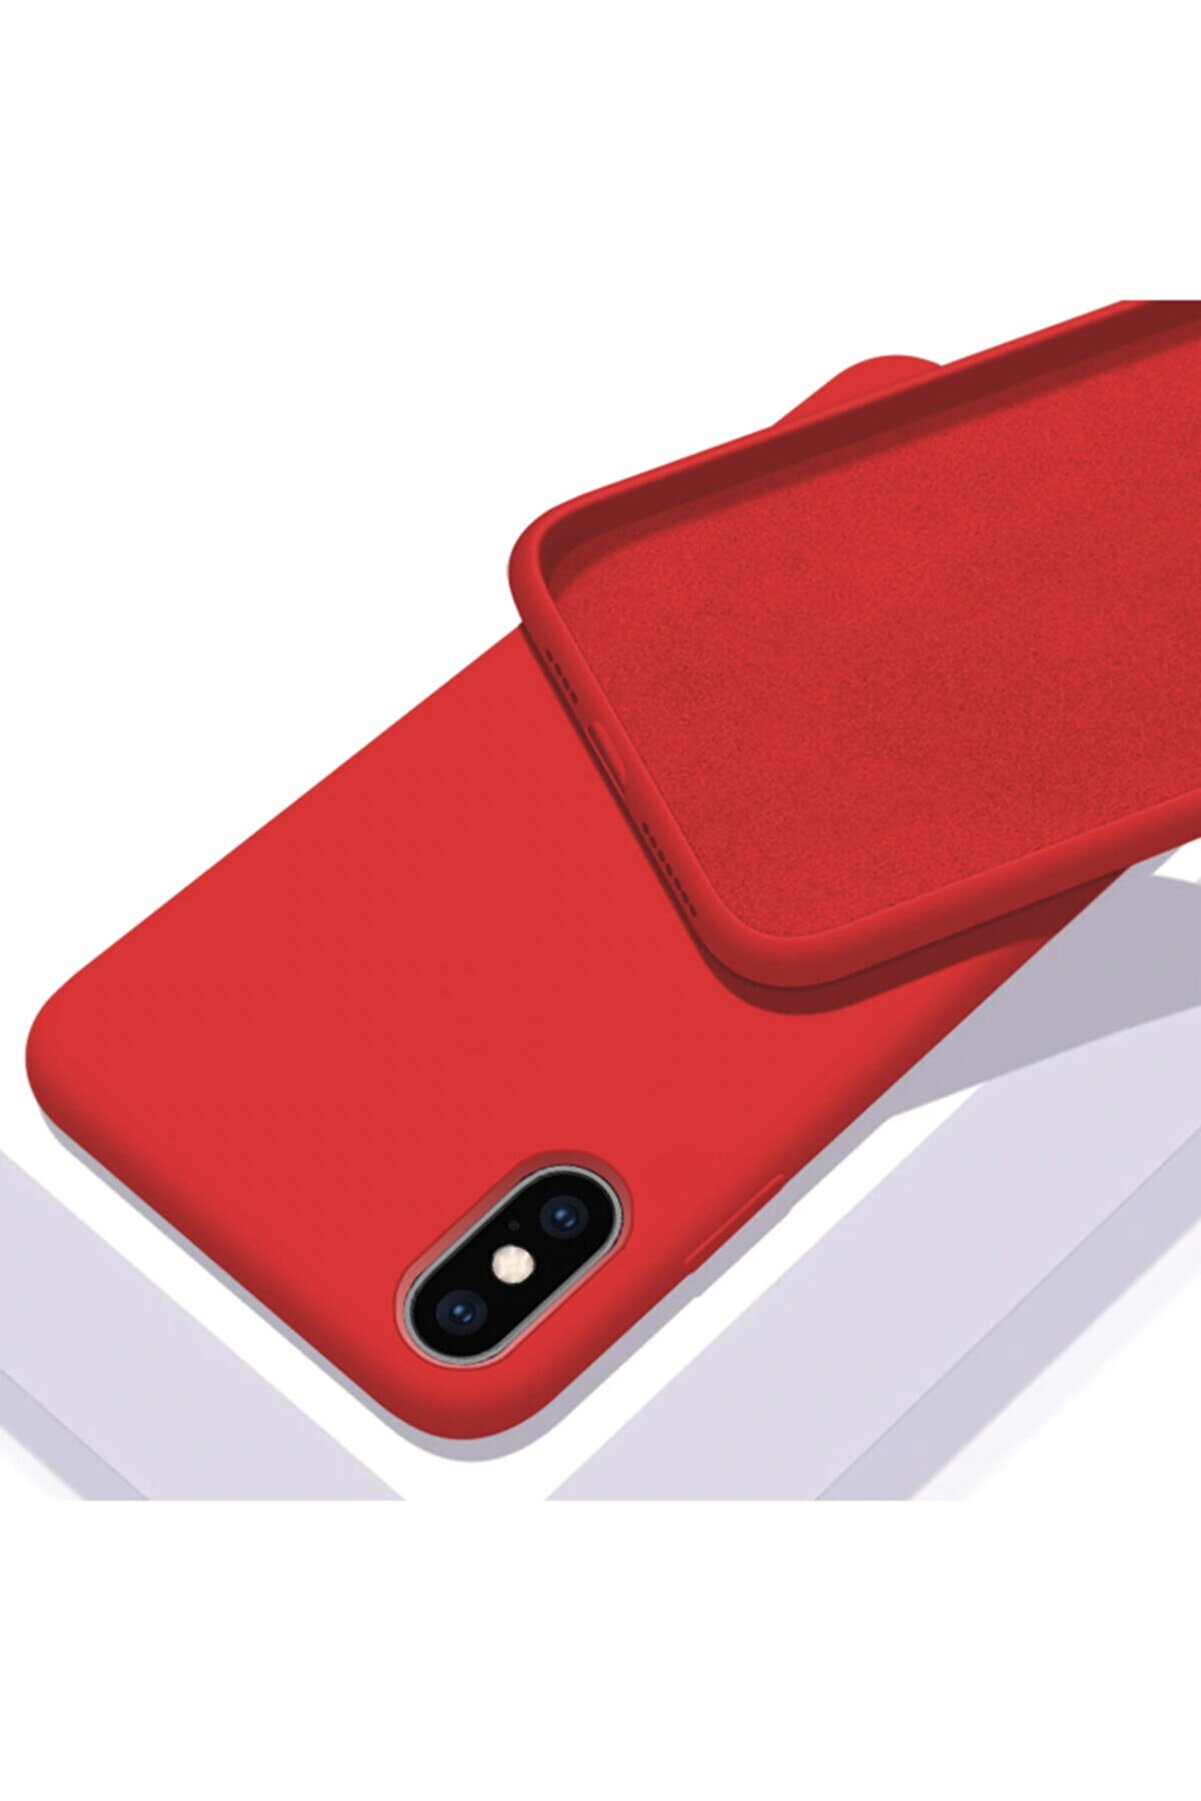 Zengin Çarşım Iphone Xs Max Içi Kadife Lansman Silikon Kılıf Kırmızı